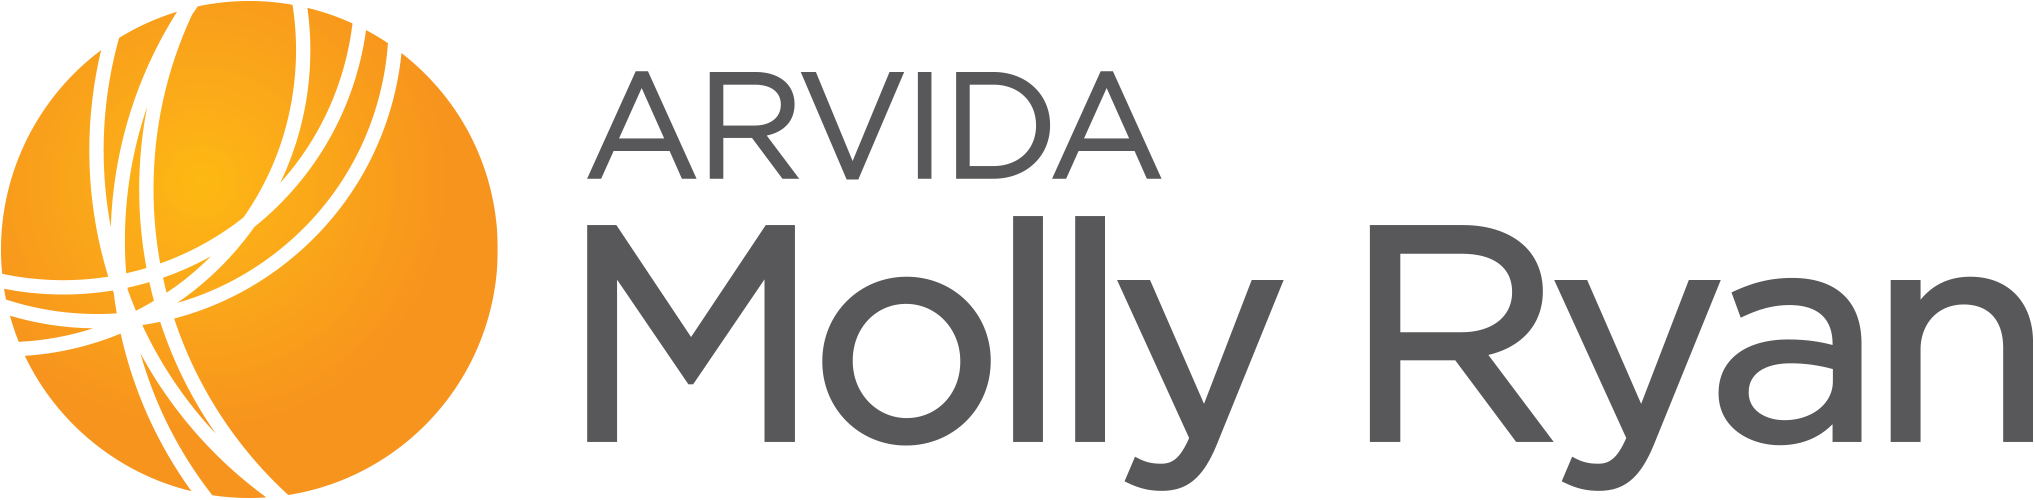 Molly Ryan | Arvida logo